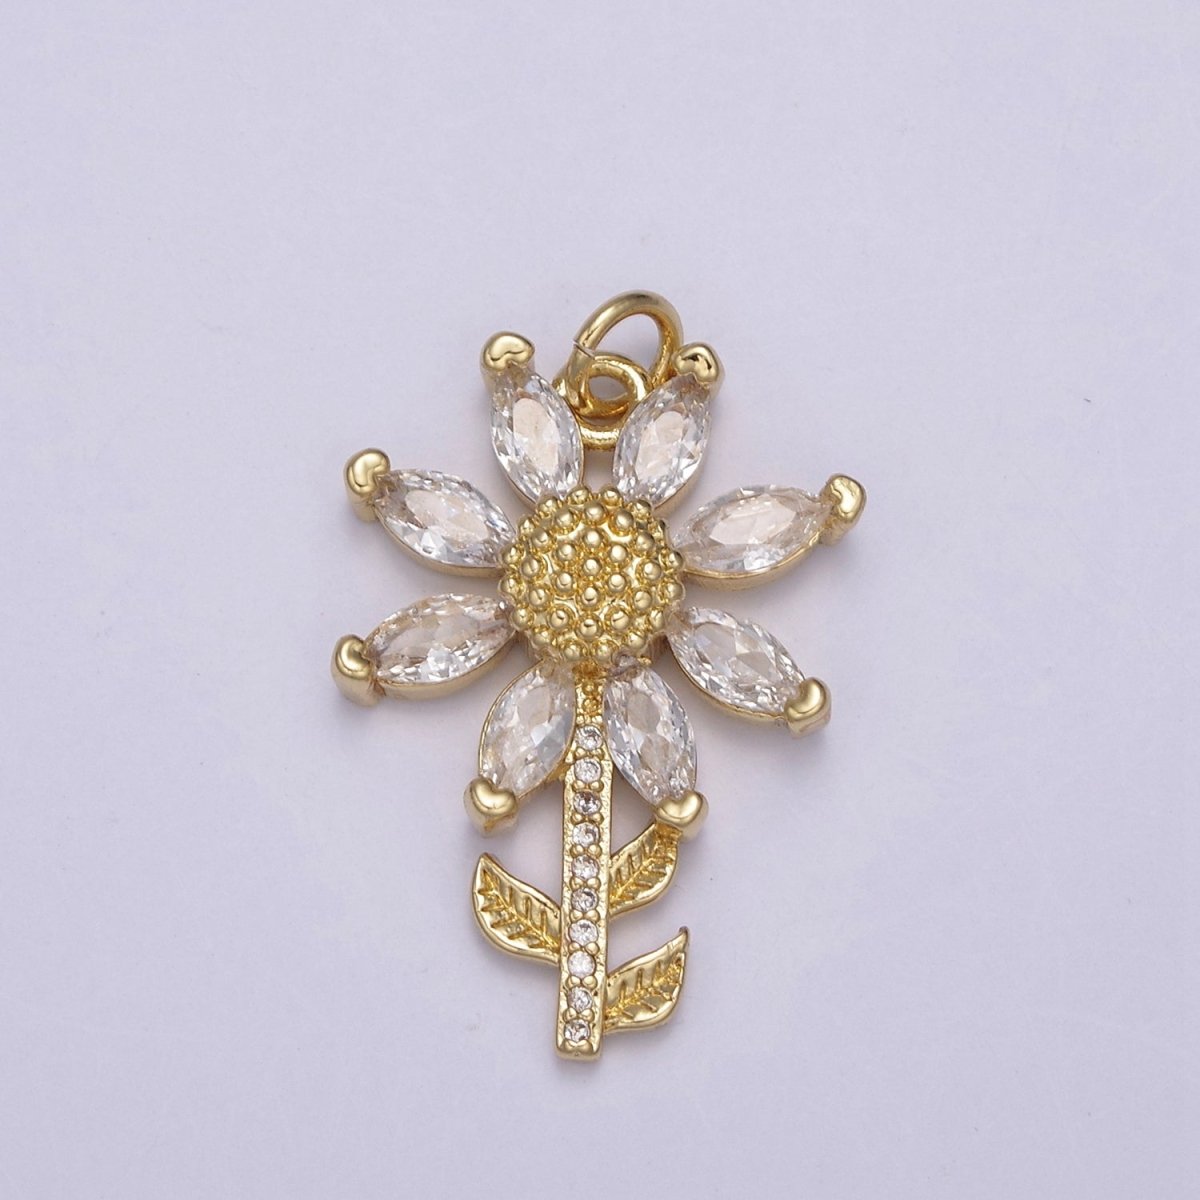 Mini 24k Gold Filled Flower Charm SunFlower Sun Flower Charm for necklace bracelet earring N-712 - DLUXCA